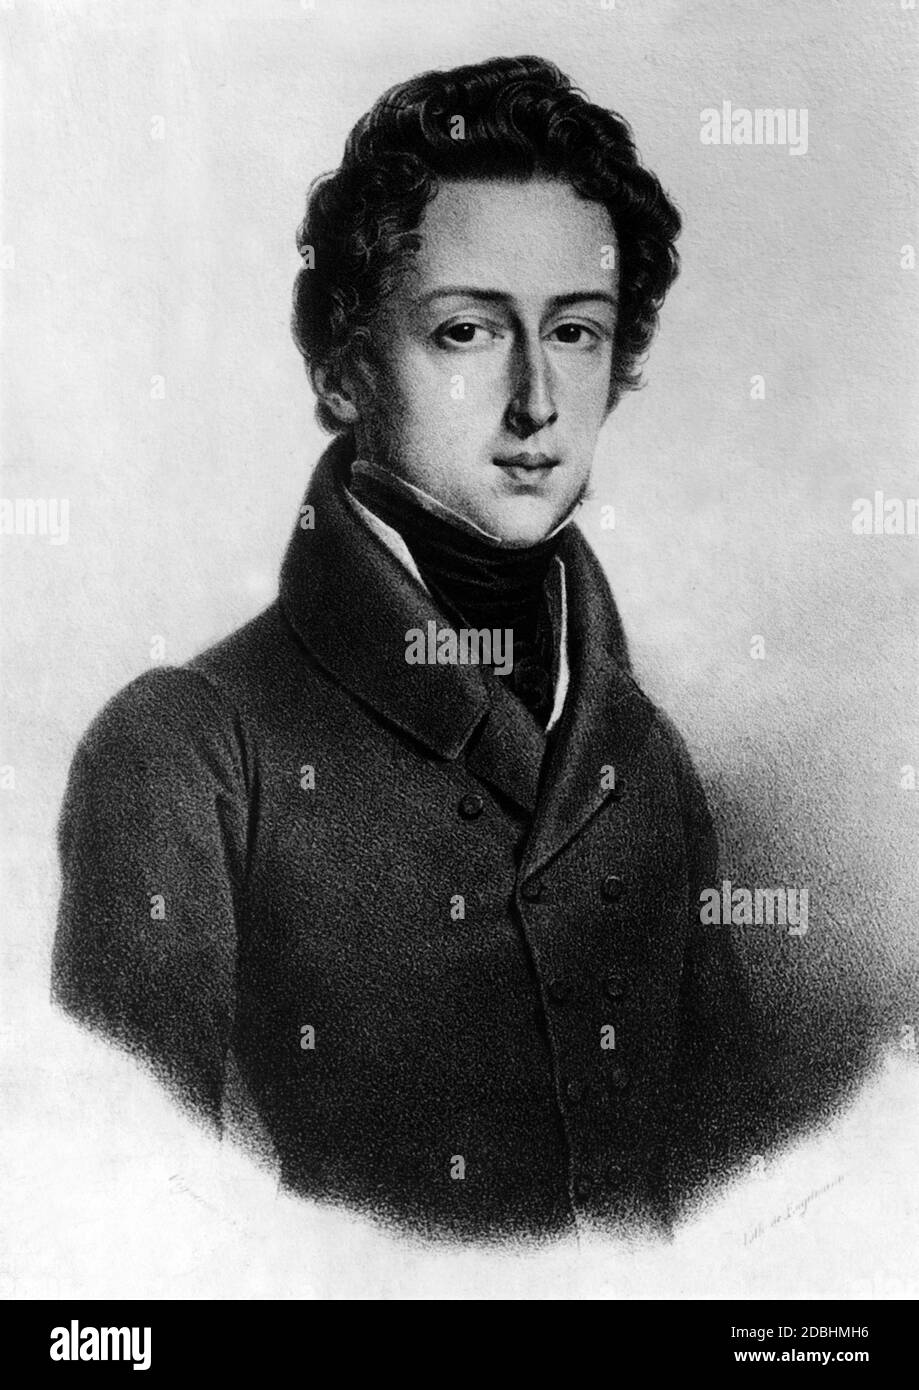 Disegno di Frederic Chopin. Immagine non ondulata. Foto Stock